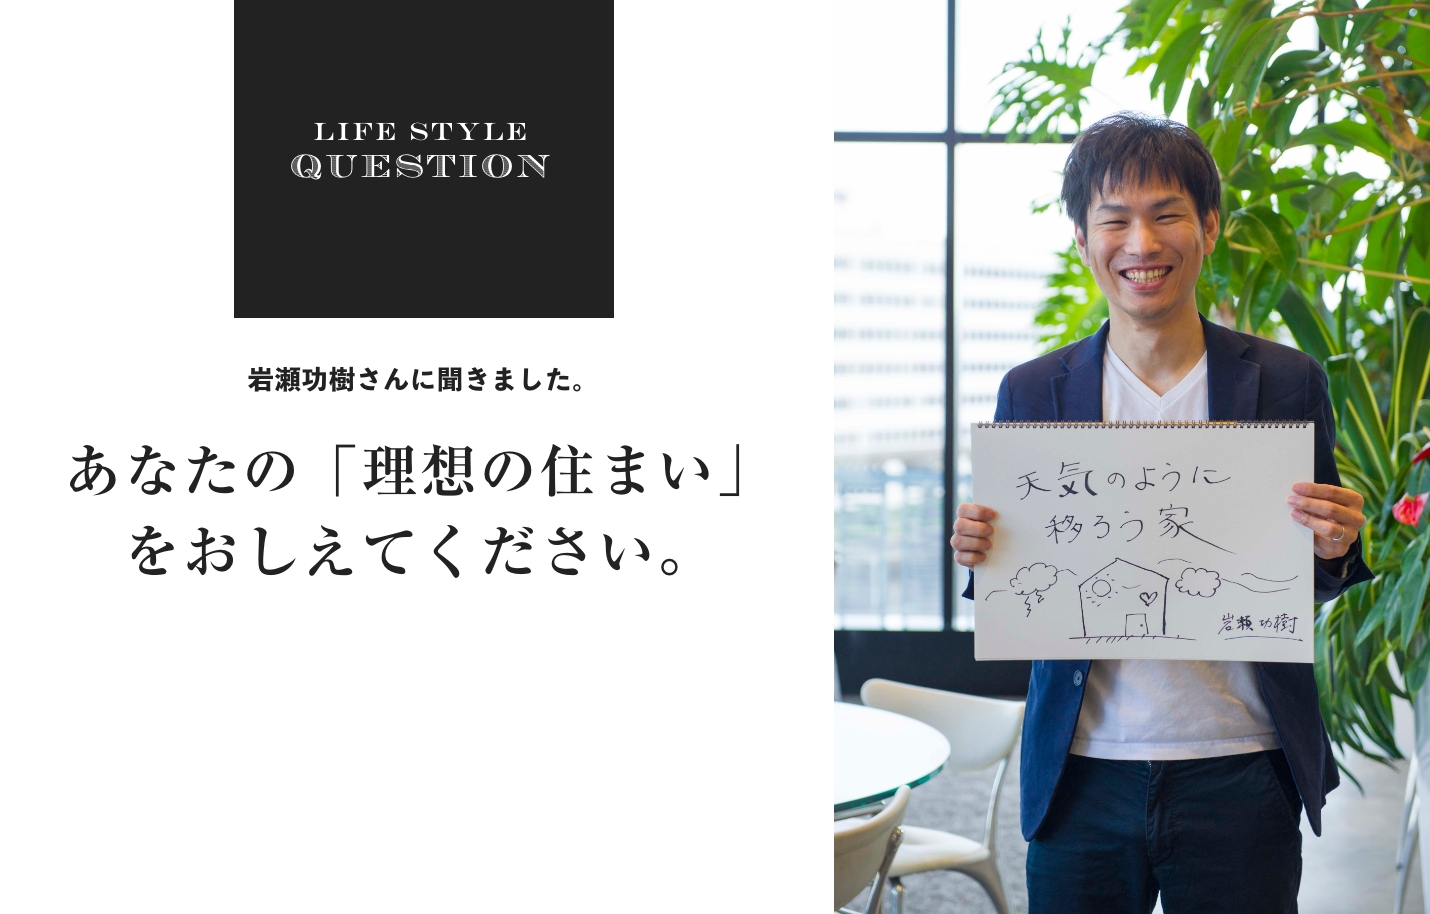 LIFE STYLE QUESTION 大野重和さんに聞きました。あなたの「理想の住まい」 をおしえてください。